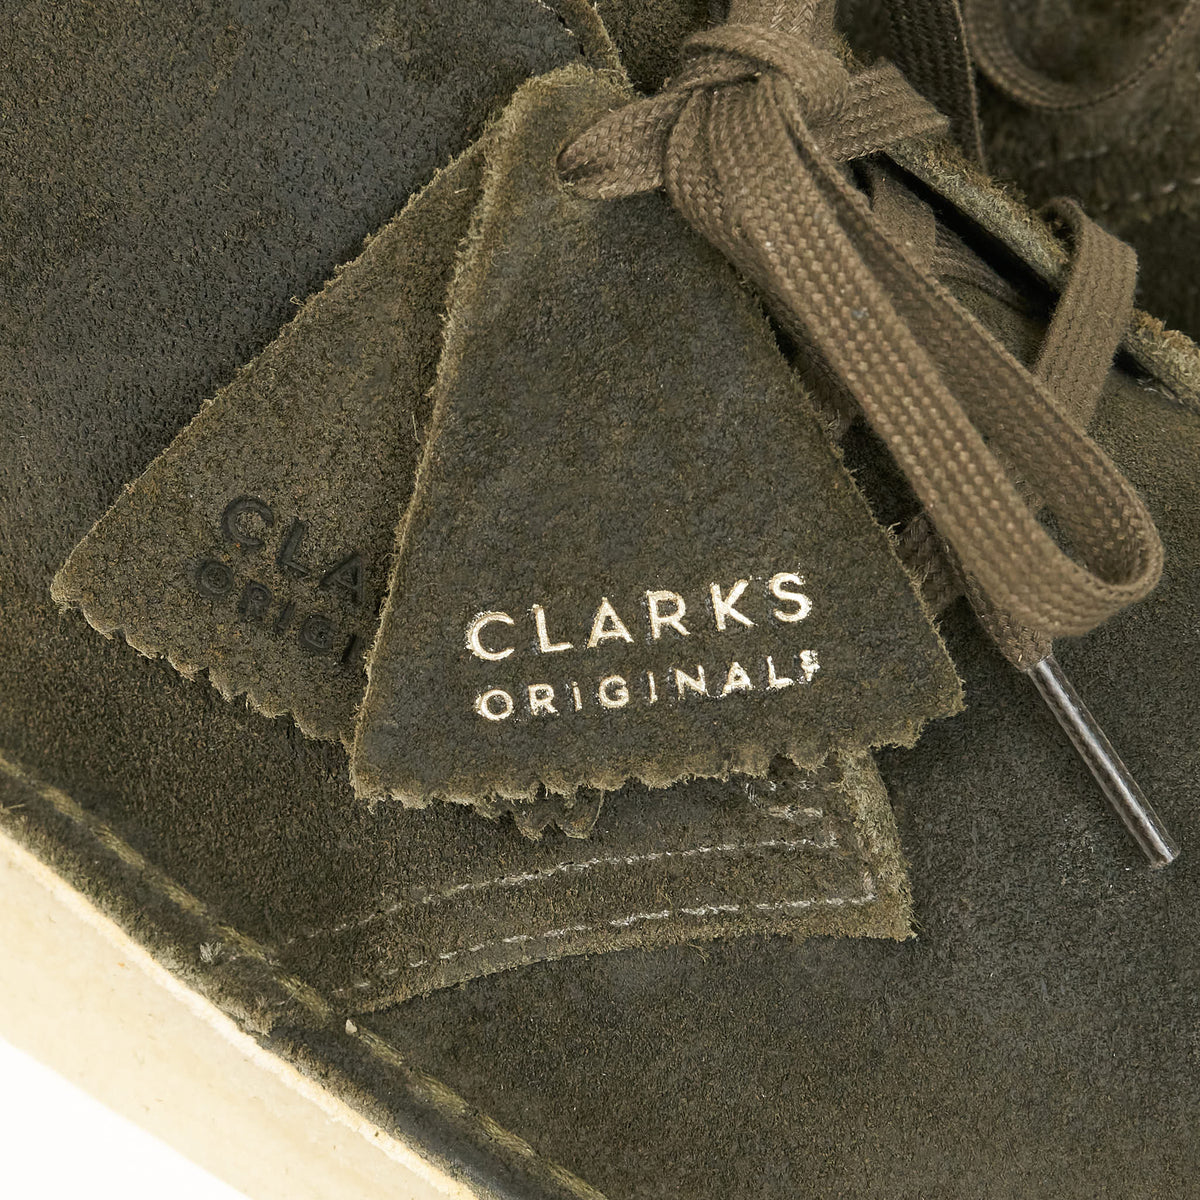 Clarks Originals Desert Coal Suede